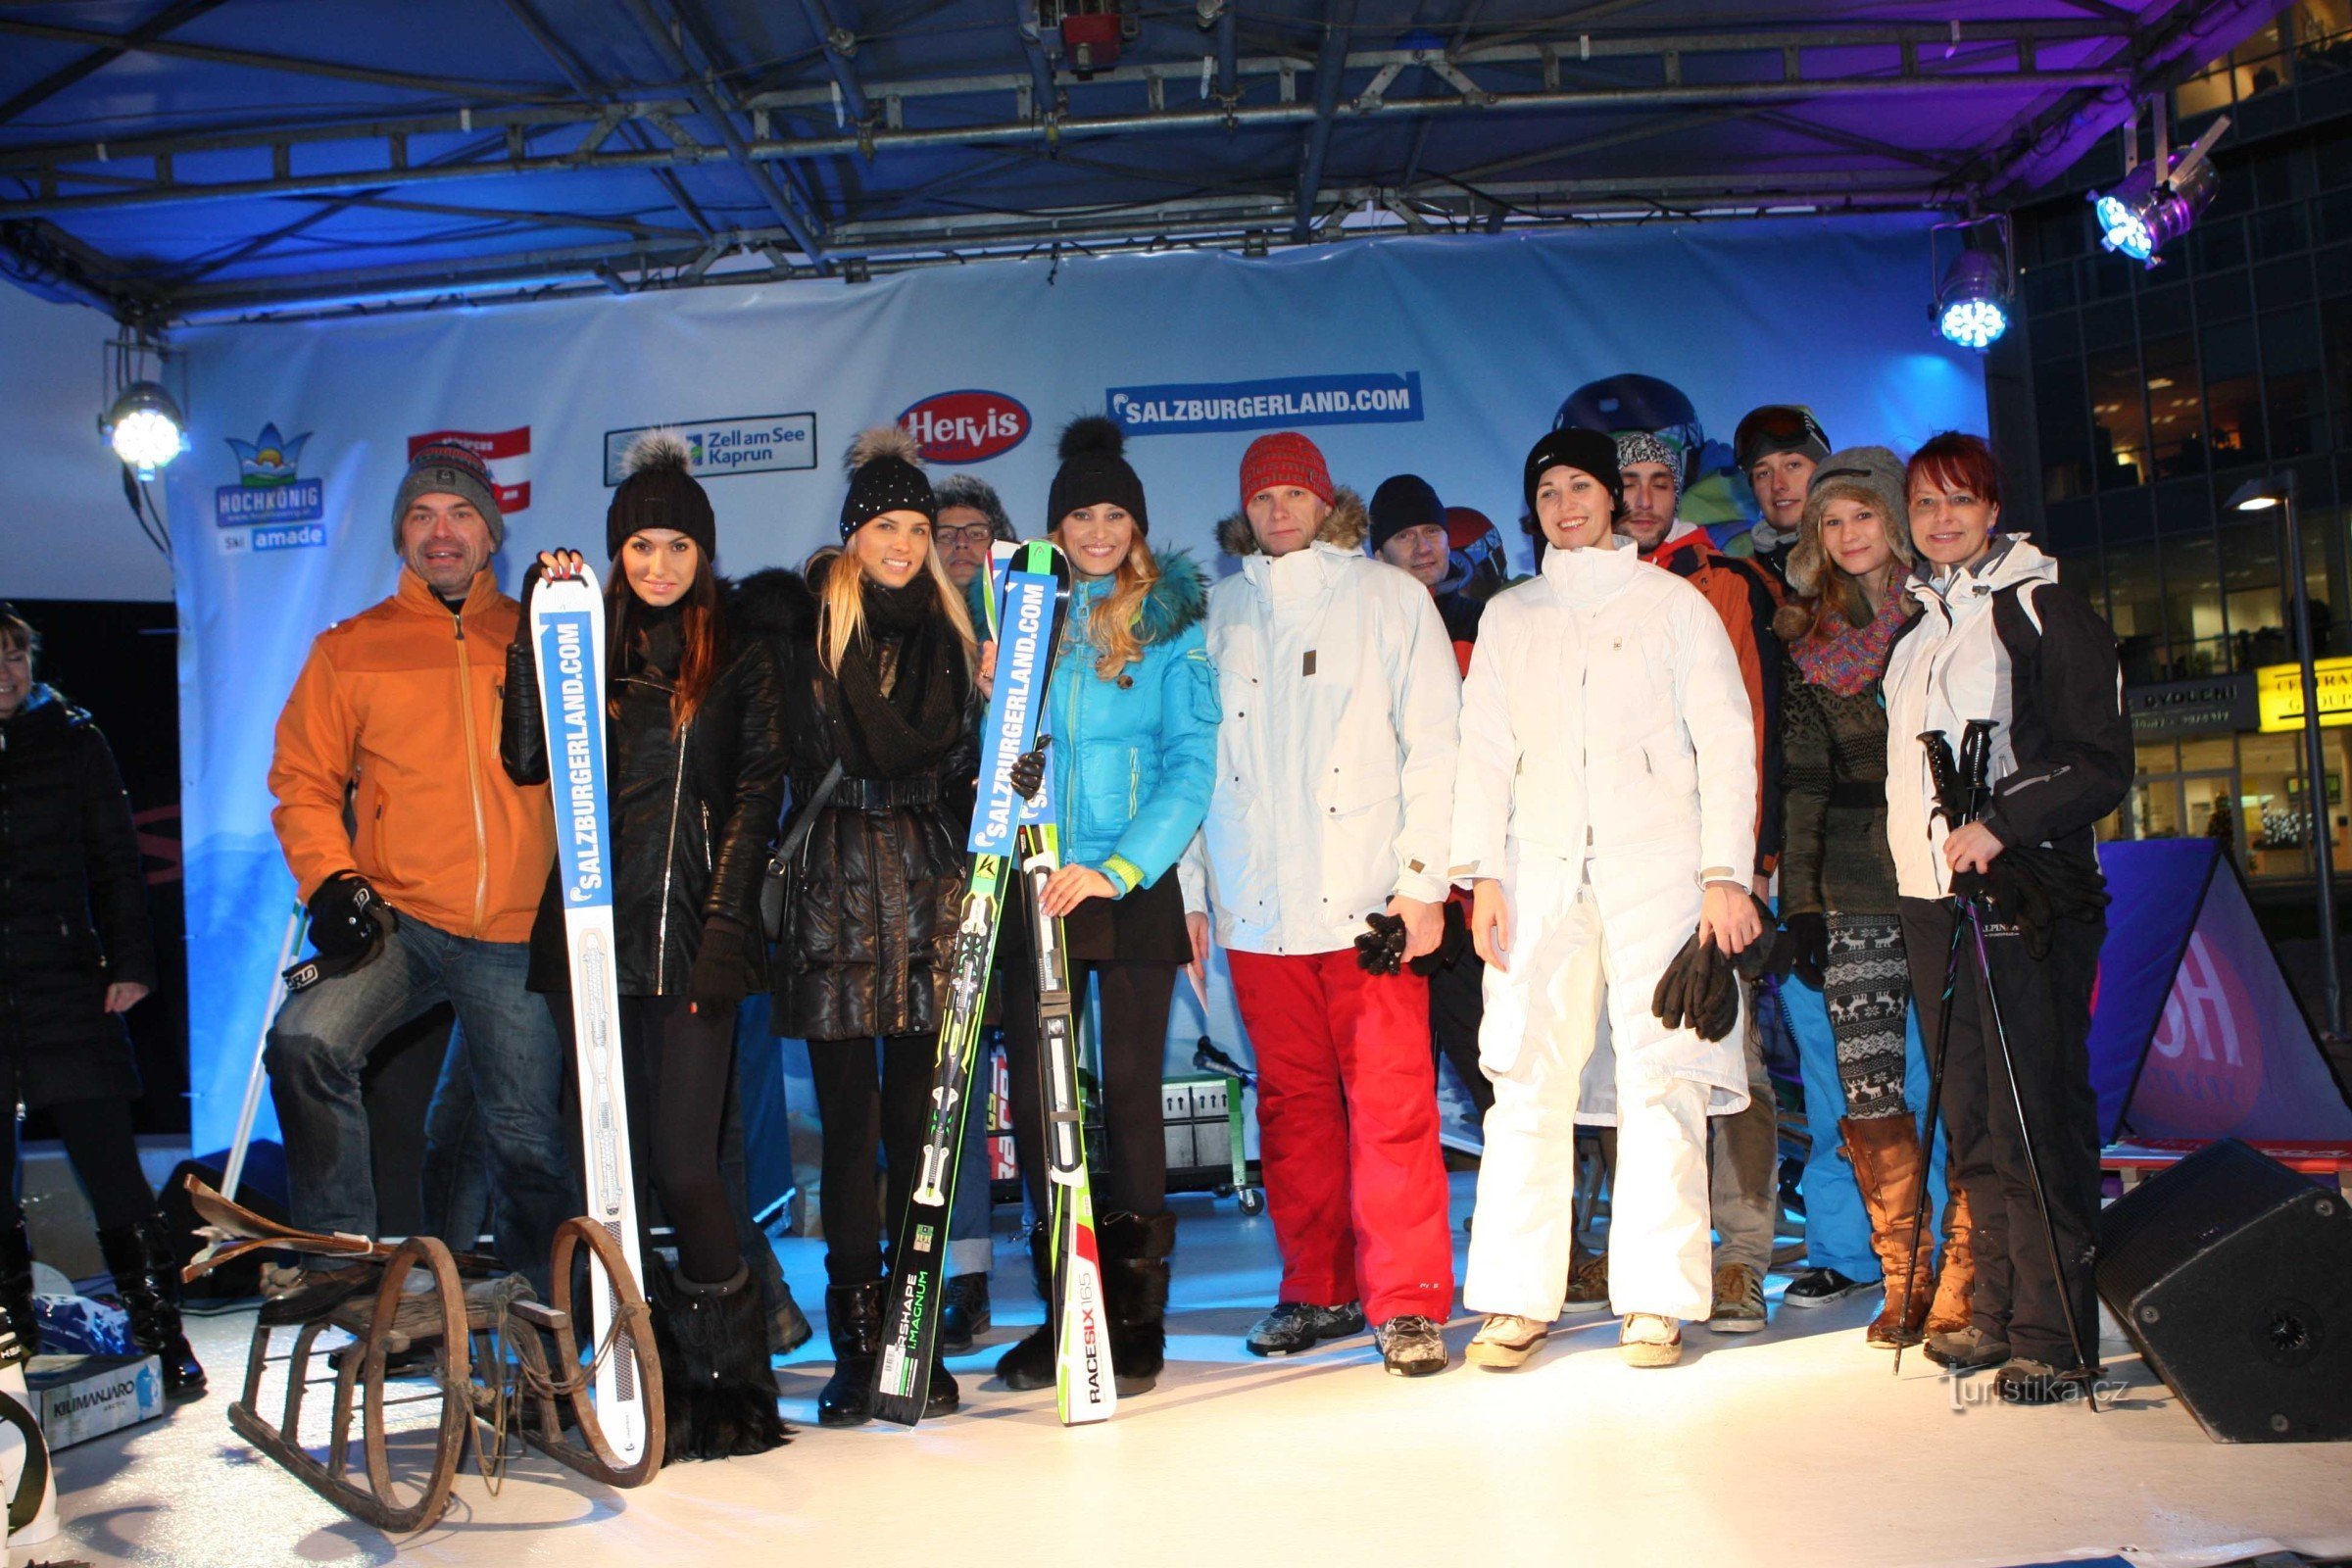 Những người trượt tuyết đã có trận tuyết đầu tiên kể từ Salzburg ở Prague